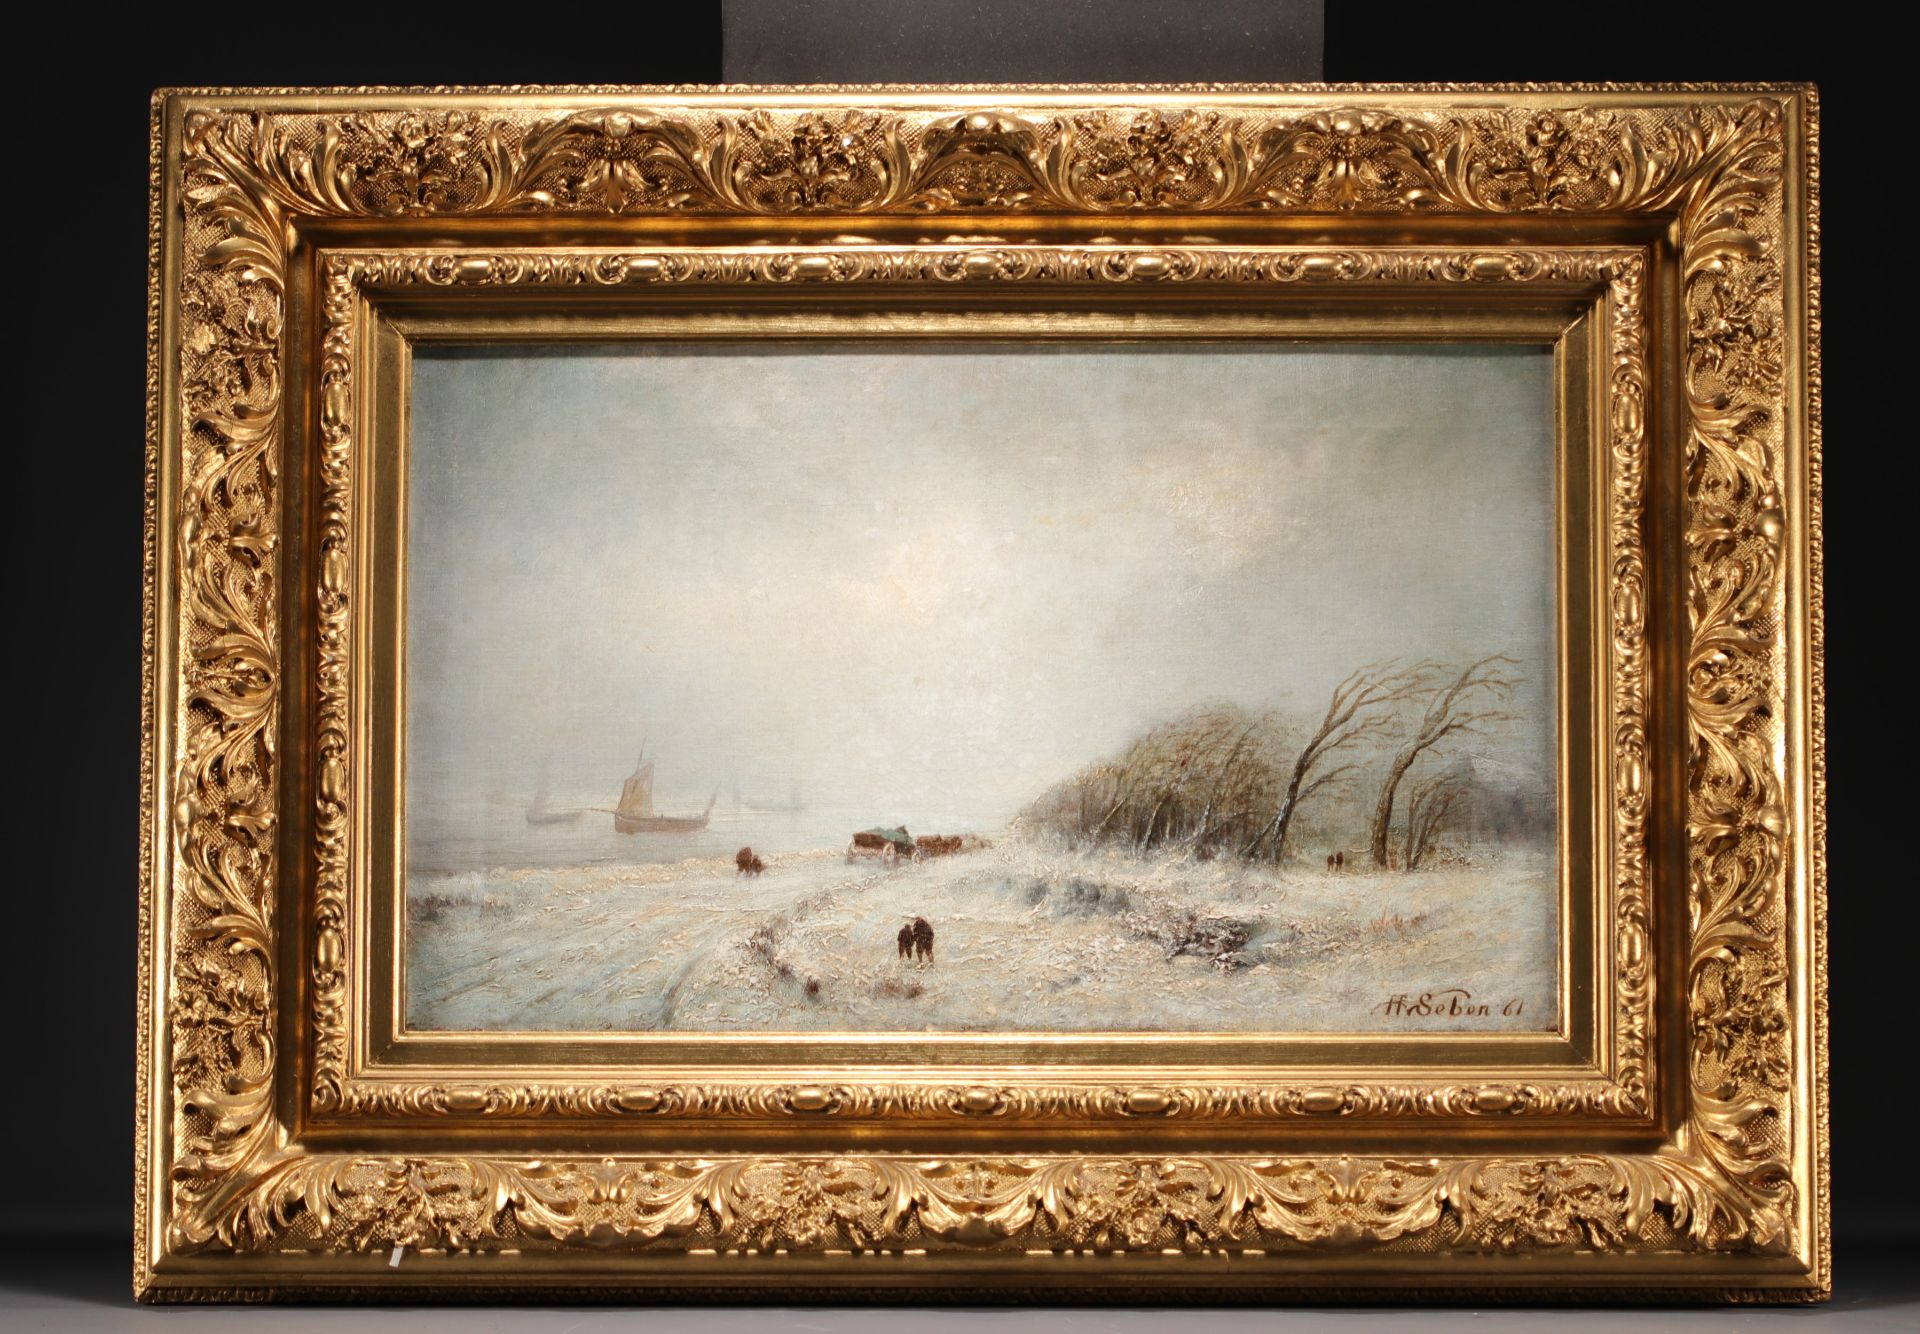 Henri VAN SEBEN (1825-1913) "Storm in Winter" Oil on canvas - Image 2 of 2